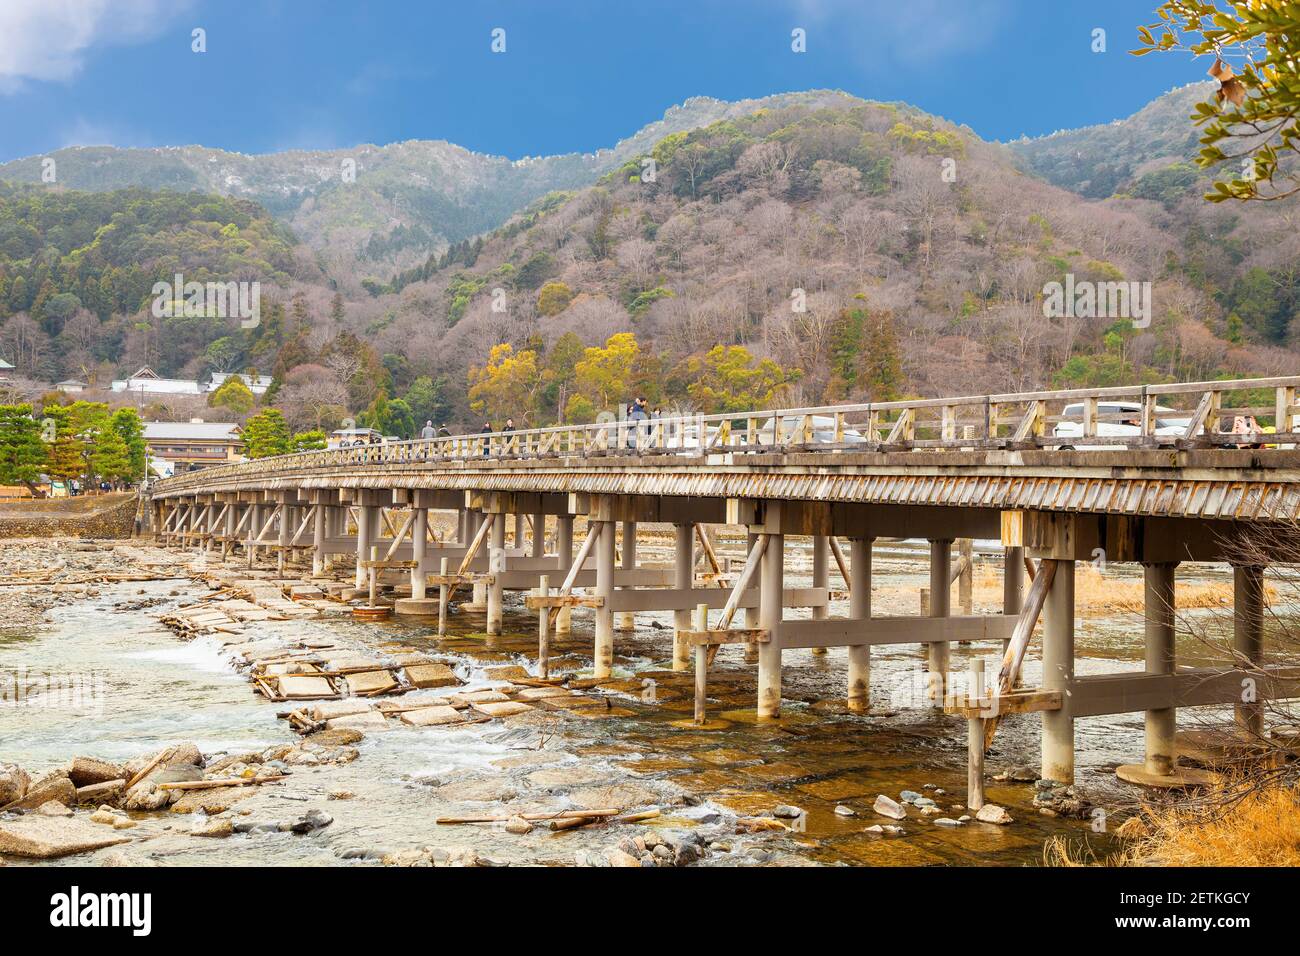 Herbsthintergrund Togetsukyo Bridge Hozu River im Arashiyama-Distrikt Kyoto, Japan, Die berühmte Togetsukyo Bridge in Arashiyama Kyoto, Japan. Stockfoto